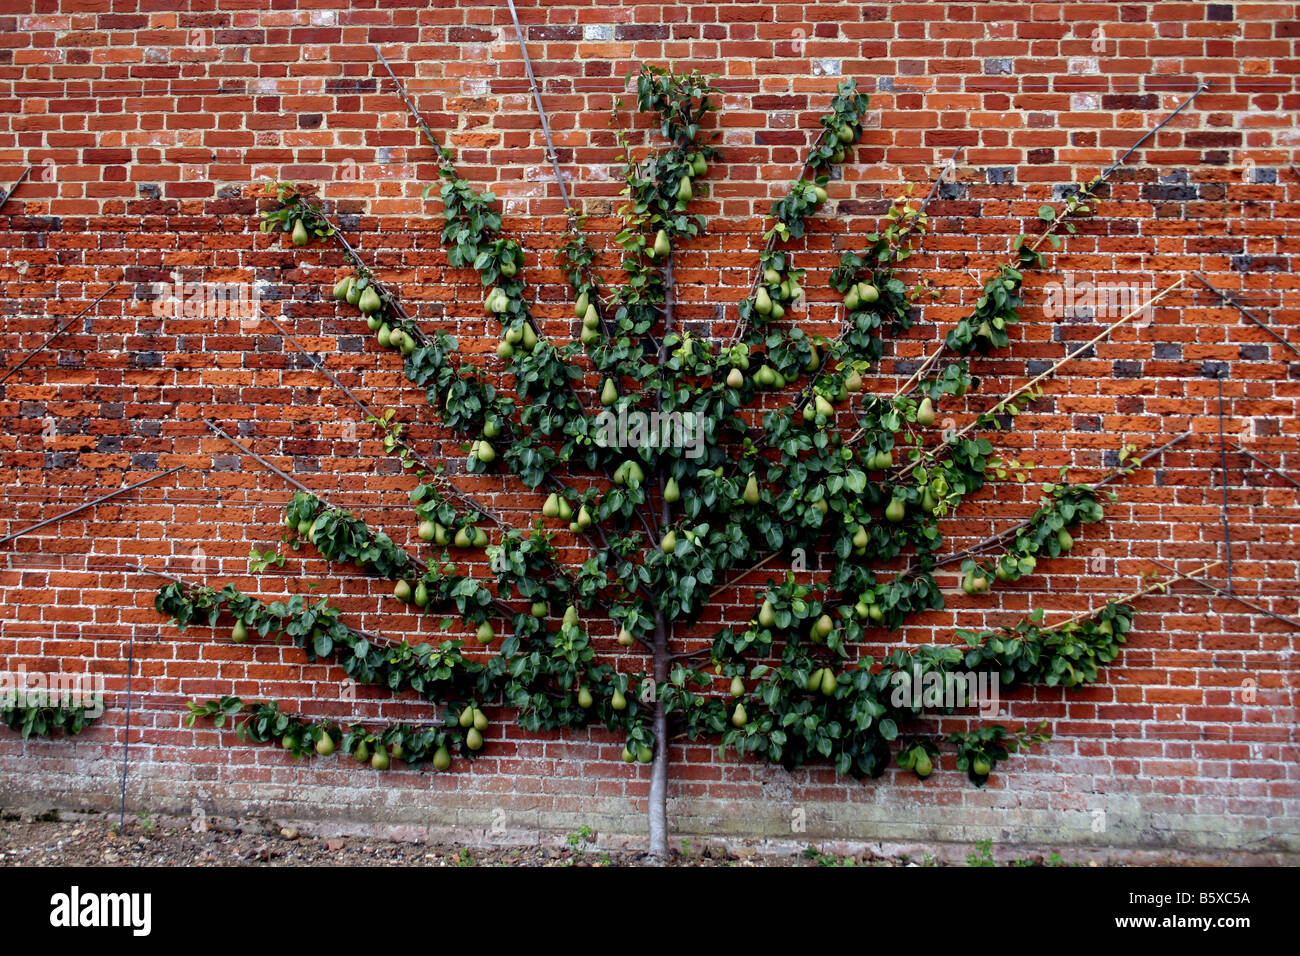 OLD ENGLISH PERA VICARIO DI WINKFIELD cresce su una struttura a spalliera contro un muro di mattoni. Foto Stock